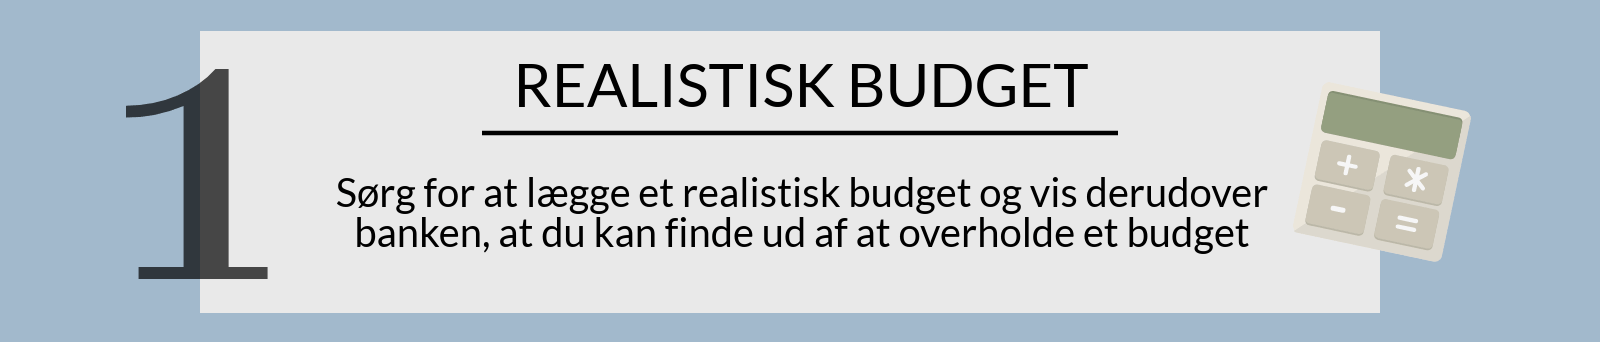 Realistisk budget